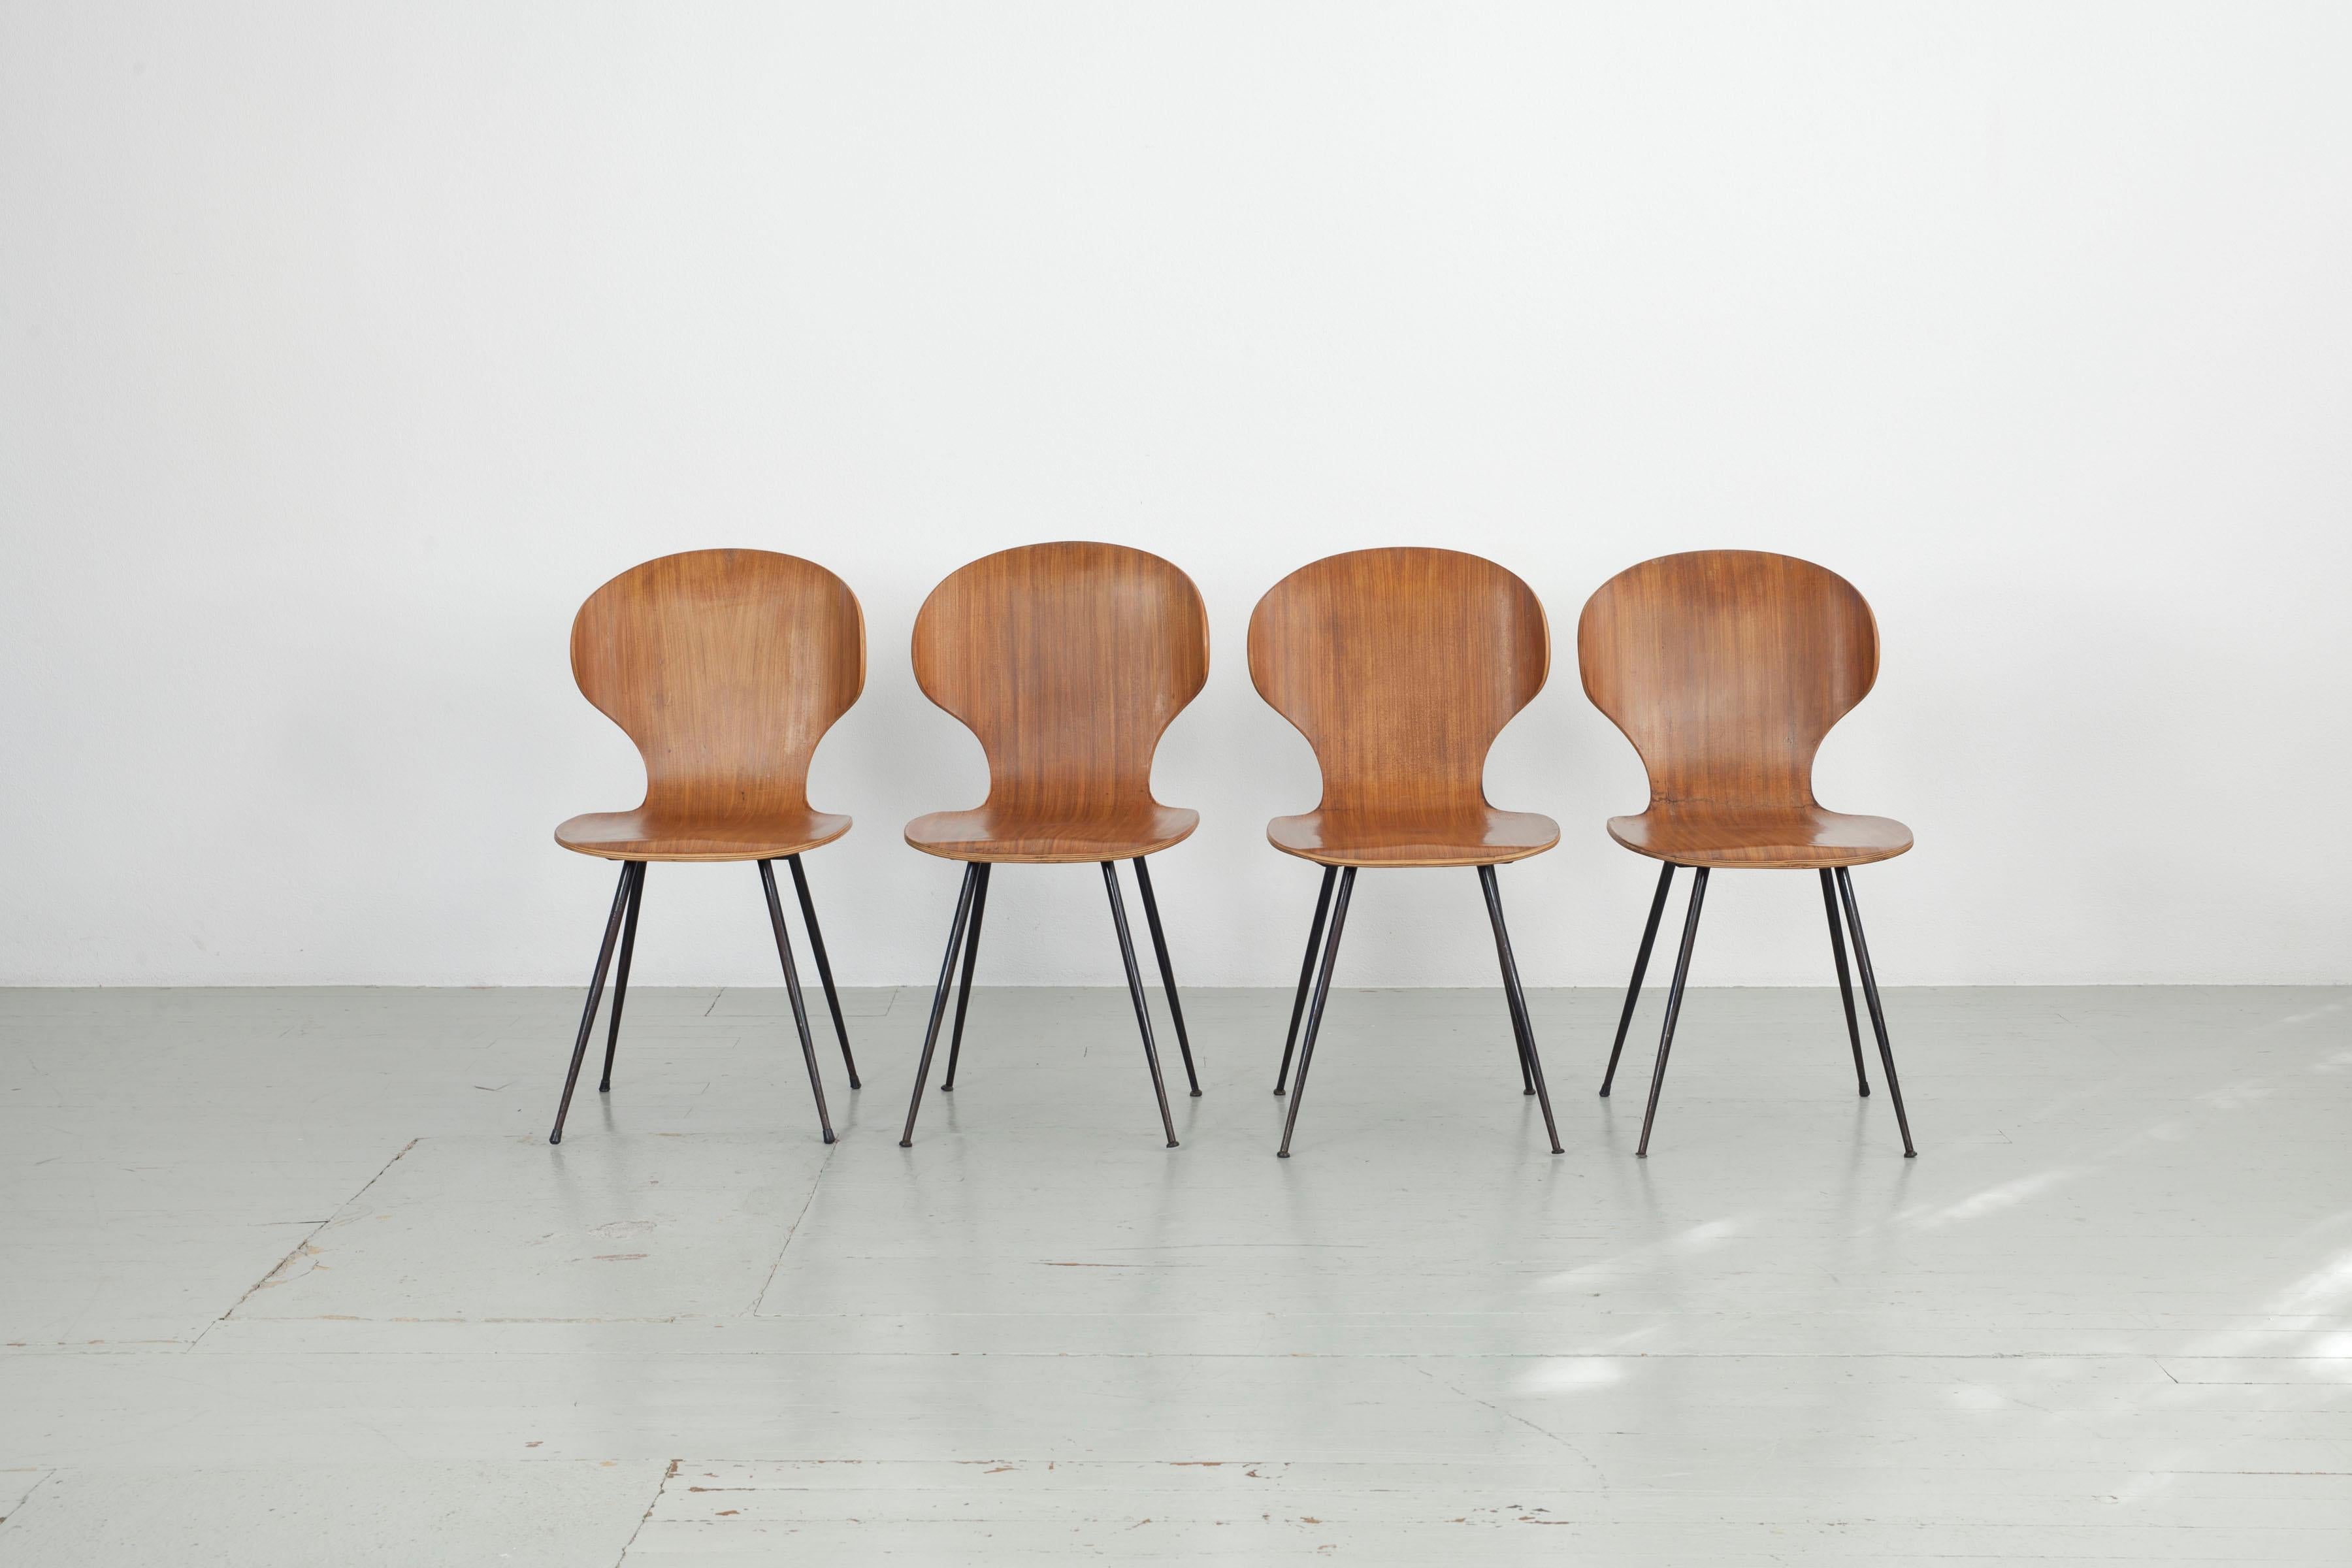 Ce modèle de chaise italienne a été conçu dans les années 1950 par Carlo Ratti pour Industira Legni Curvati Lissoni et est composé de bois courbé et de pieds en métal laqué noir. Les formes arrondies et les pieds fins confèrent à la chaise de